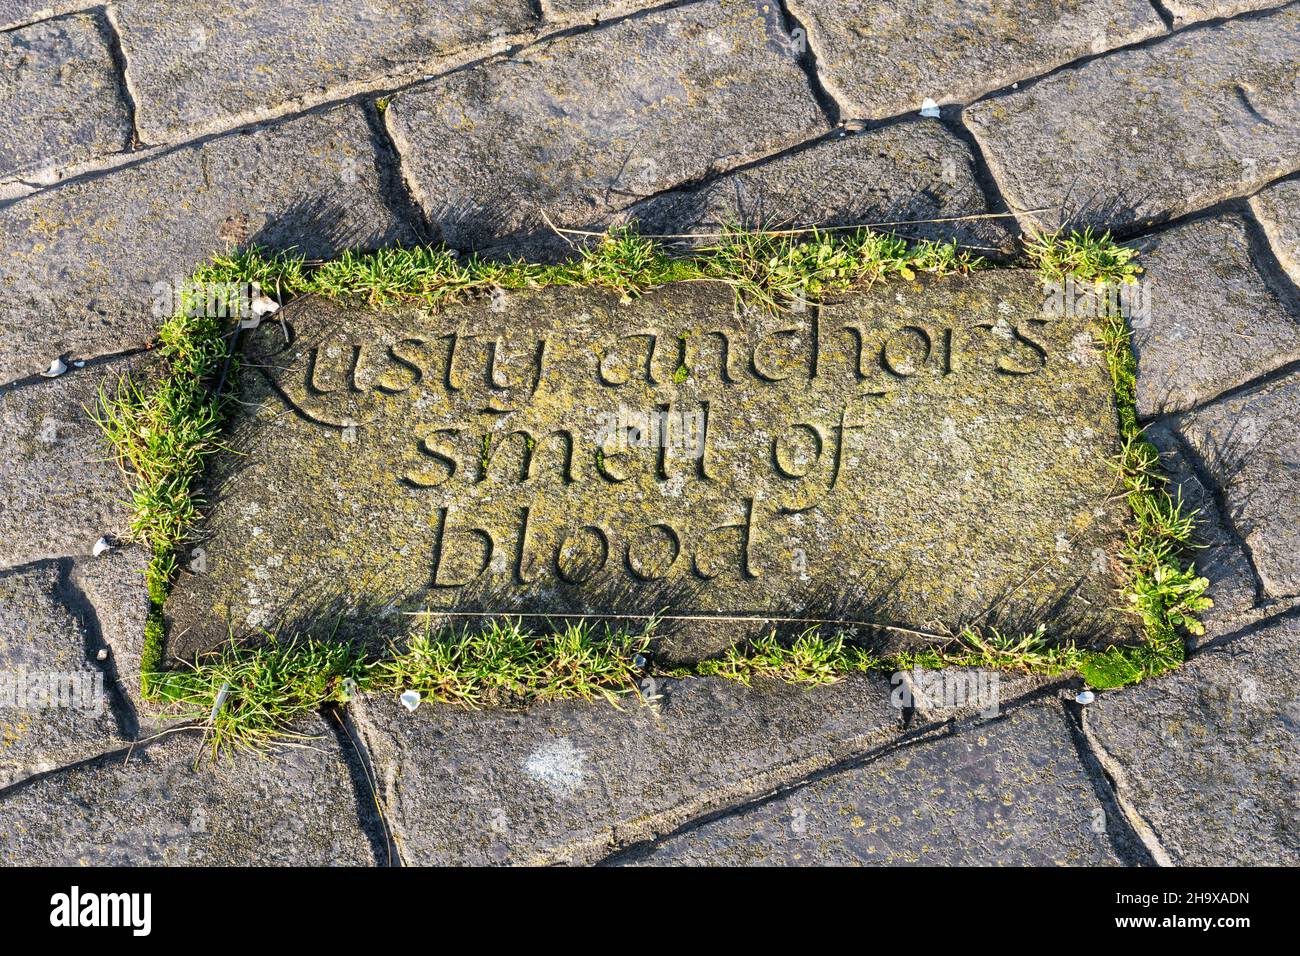 Dalle de pierre sculptée dans le mur du port de Maryport avec les mots 'Rusty Anchors odorat of Blood', Cumbria, Angleterre, Royaume-Uni Banque D'Images